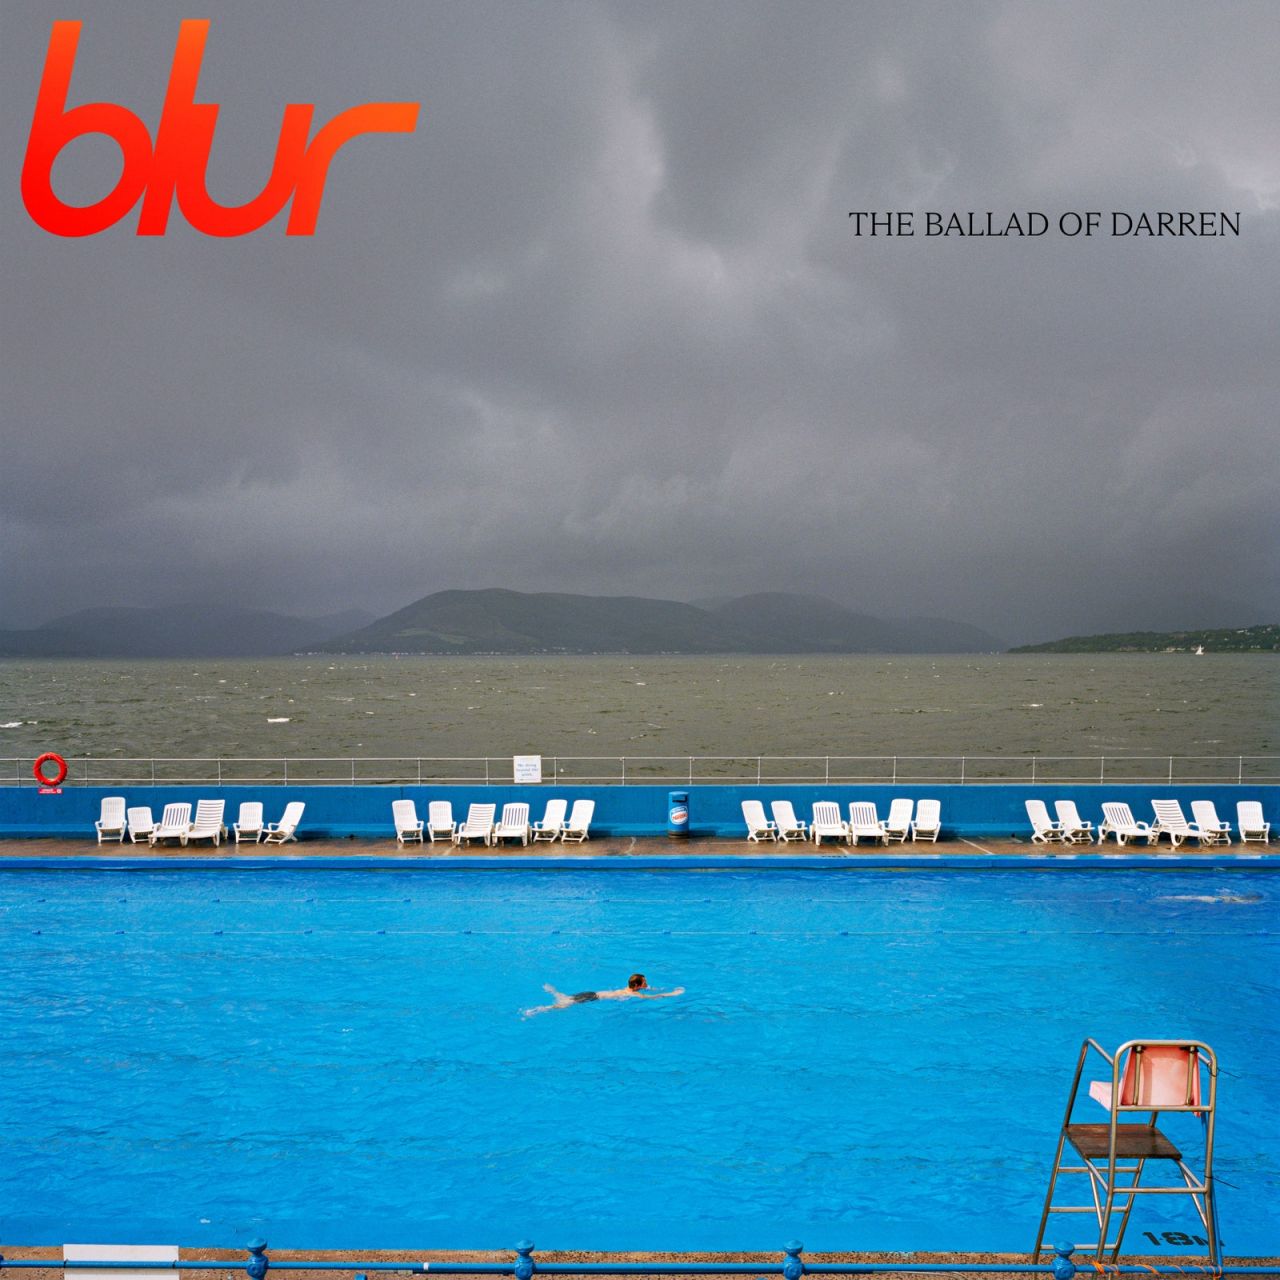 Blur - The Ballad Of Darren - CD Deluxe